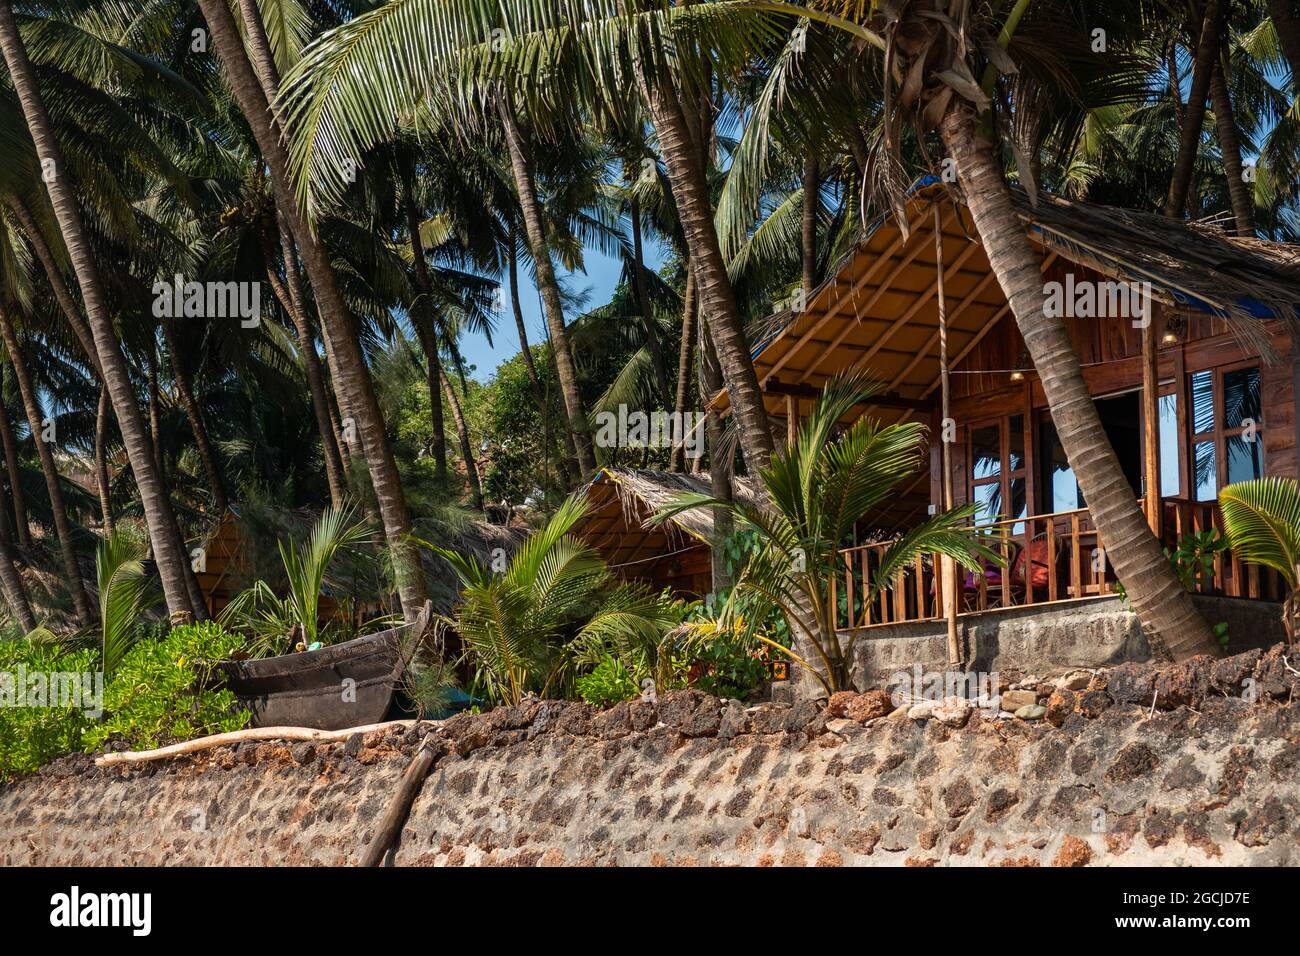 Wooden bungalows on Colva Beach, South Goa, India Stock Photo